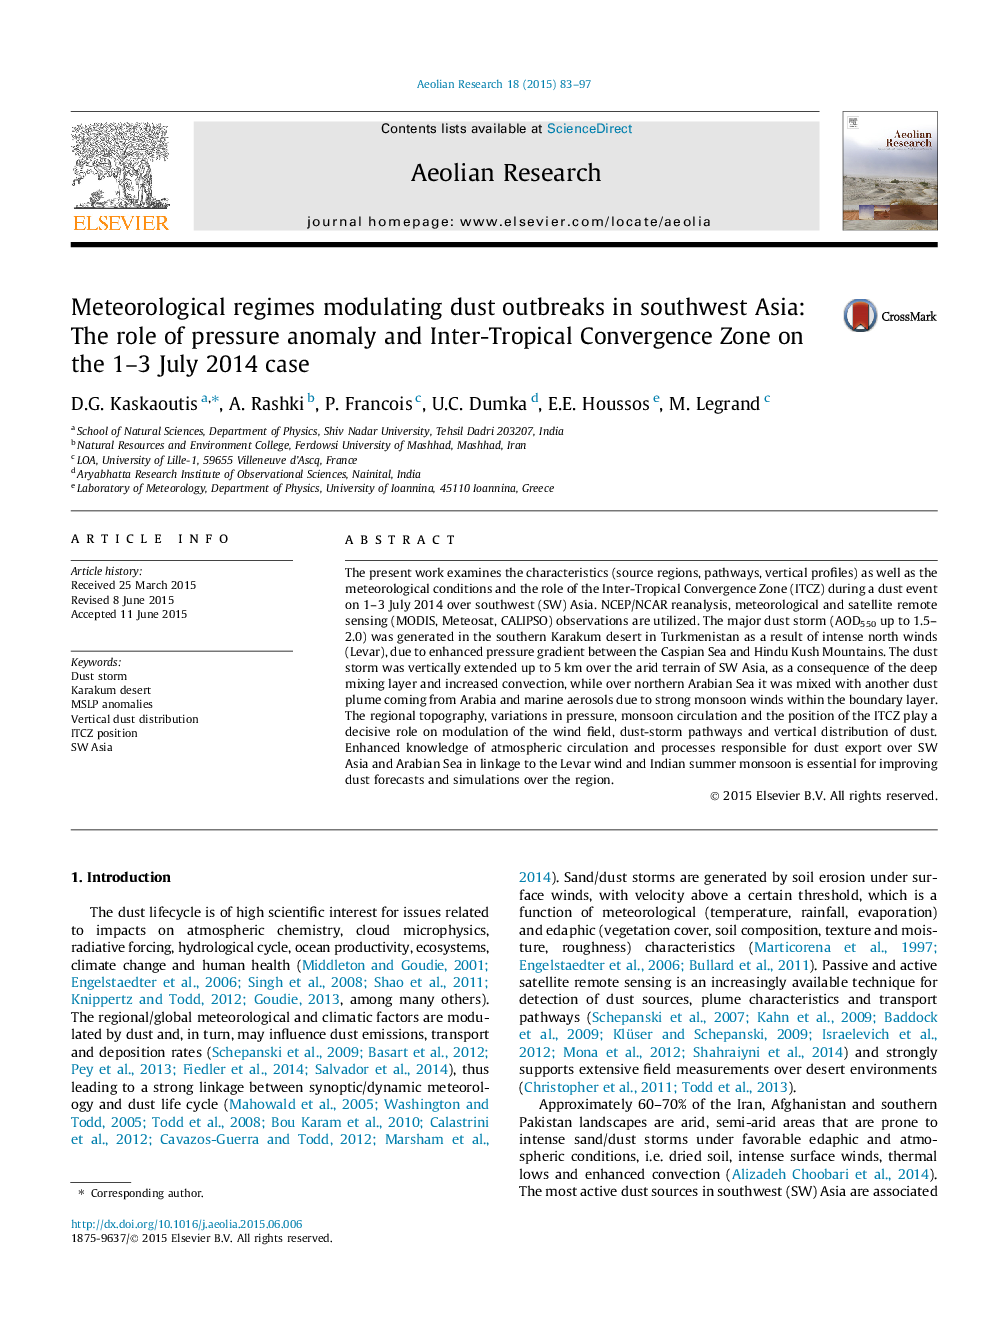 رژیم های هواشناسی مداخله شیوع گرد و غبار در جنوب غربی آسیا: نقش آنومالی فشار و منطقه همگرایی بین تروپیکی در مورد 1-3 جولای 2014 